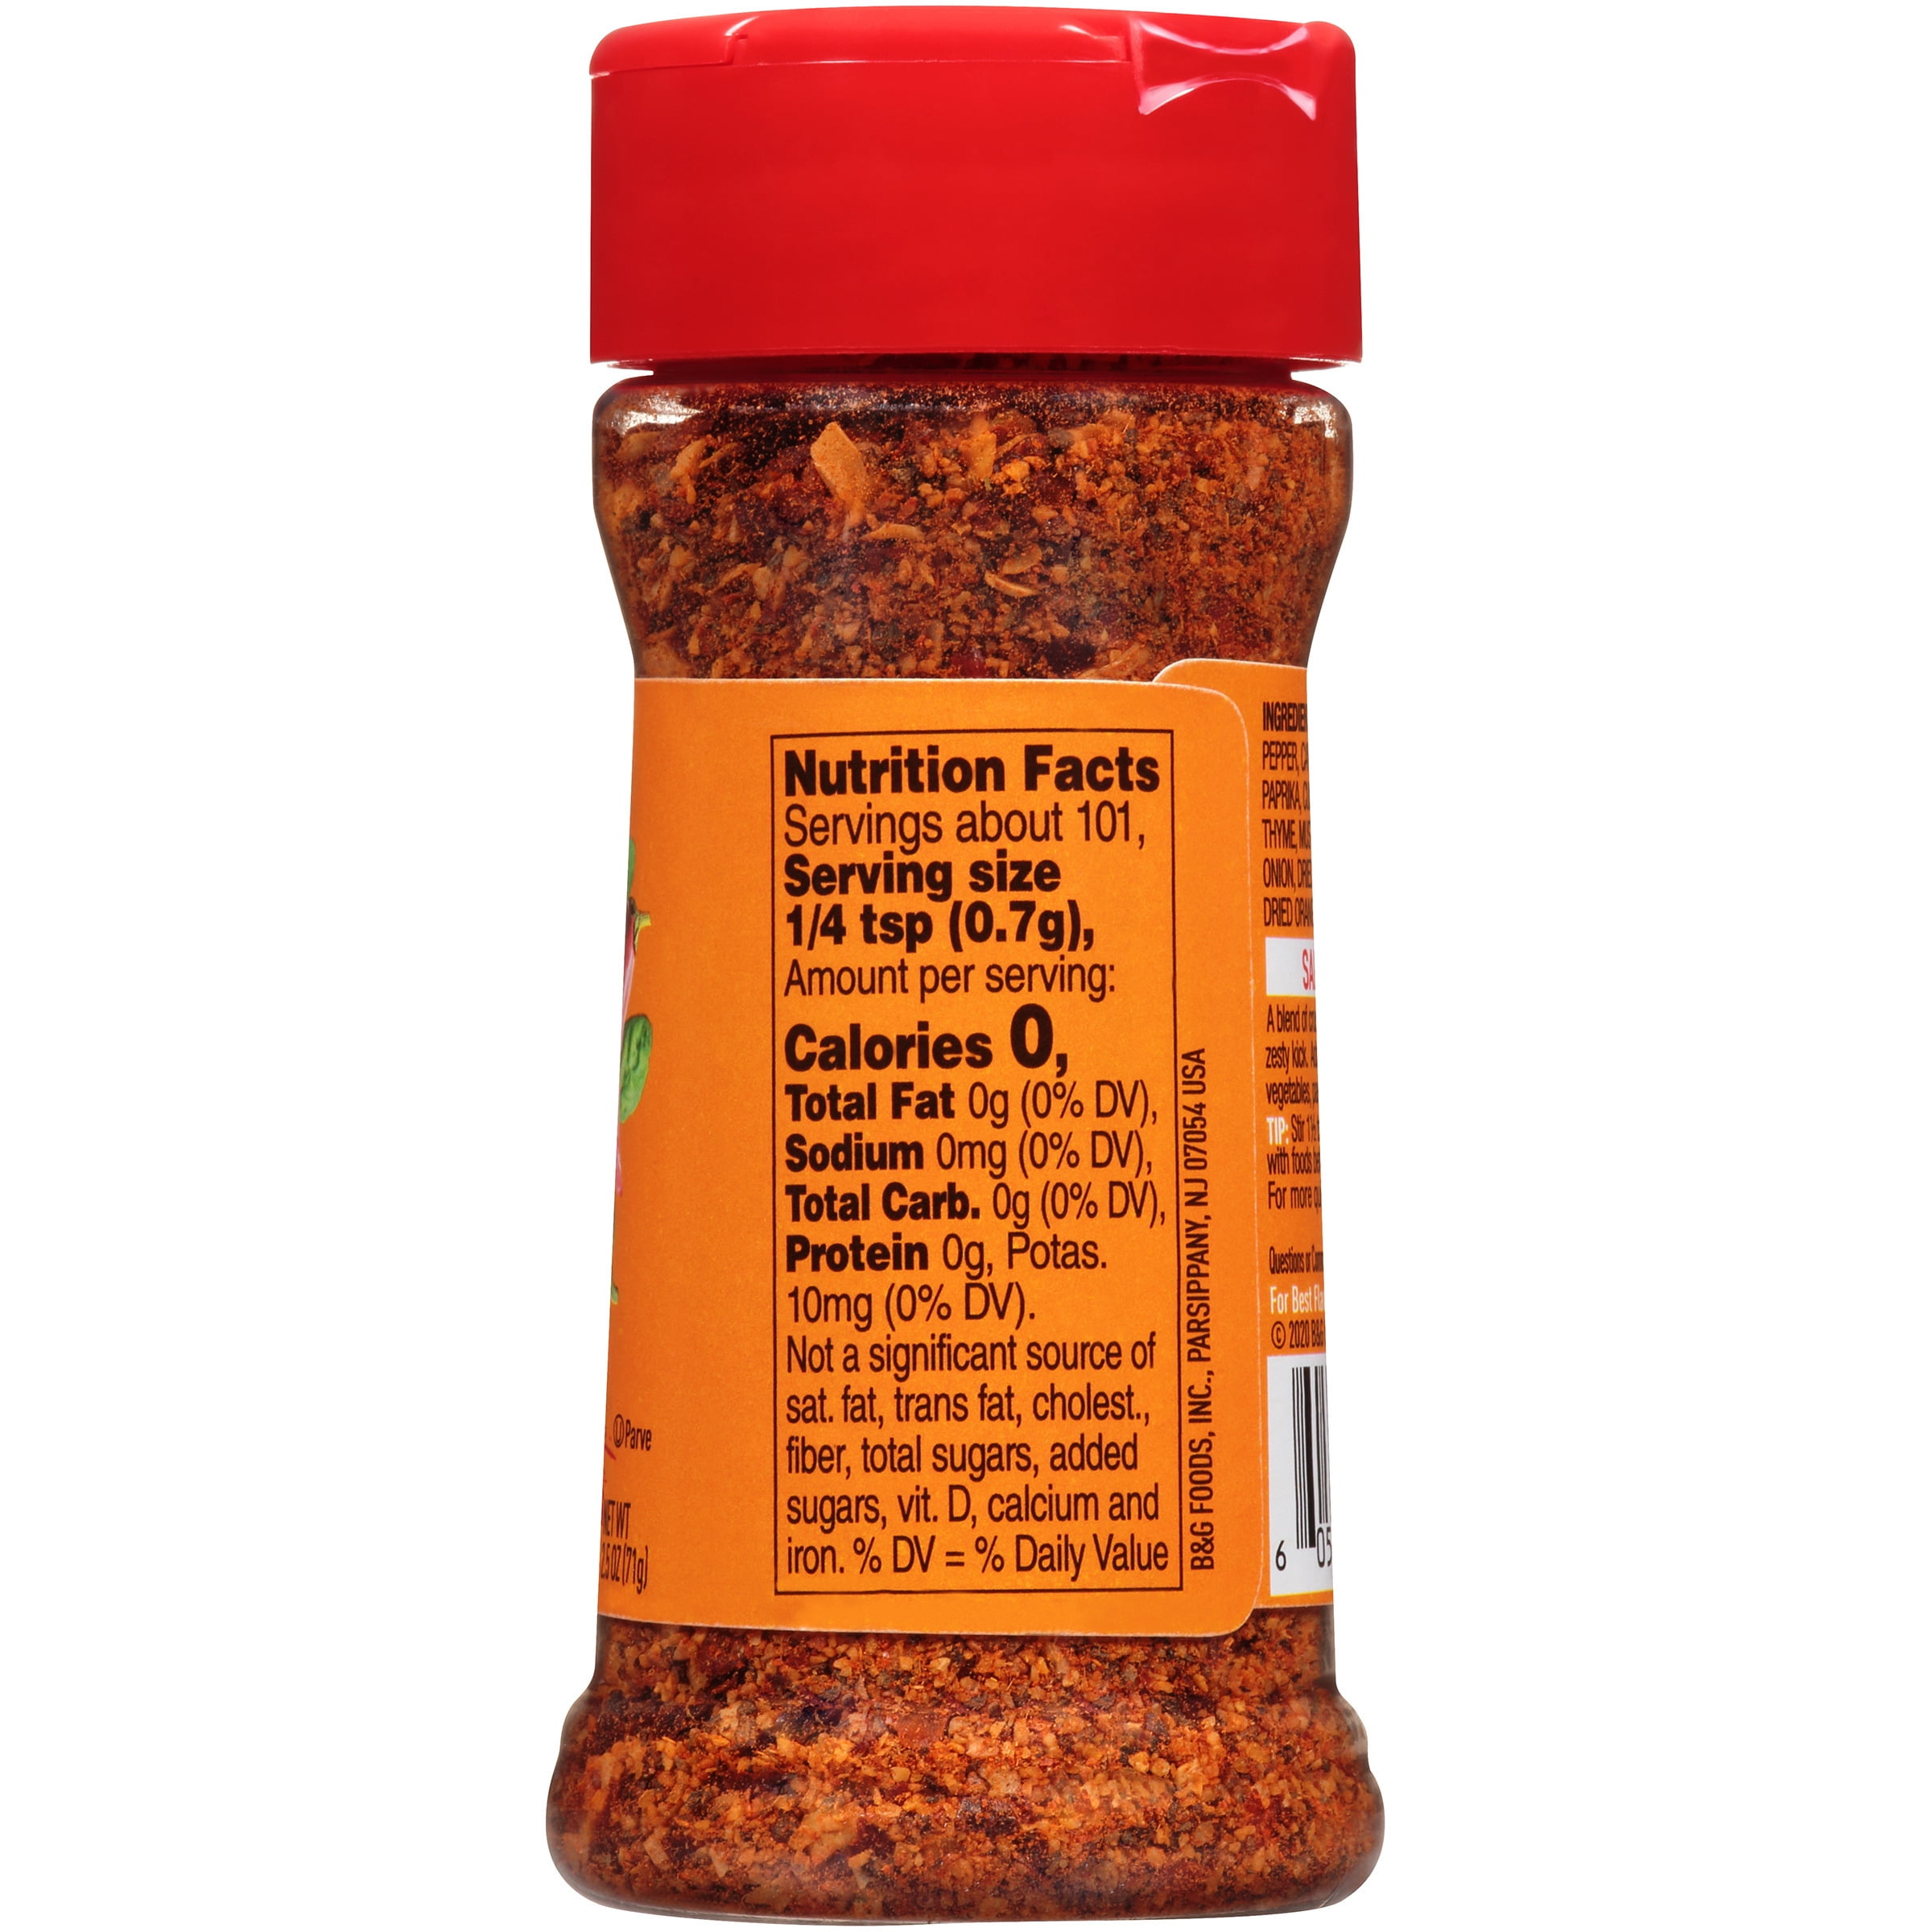 Dash Spicy Jalapeno Seasoning Blend 2.5 oz – Seasoning Warehouse